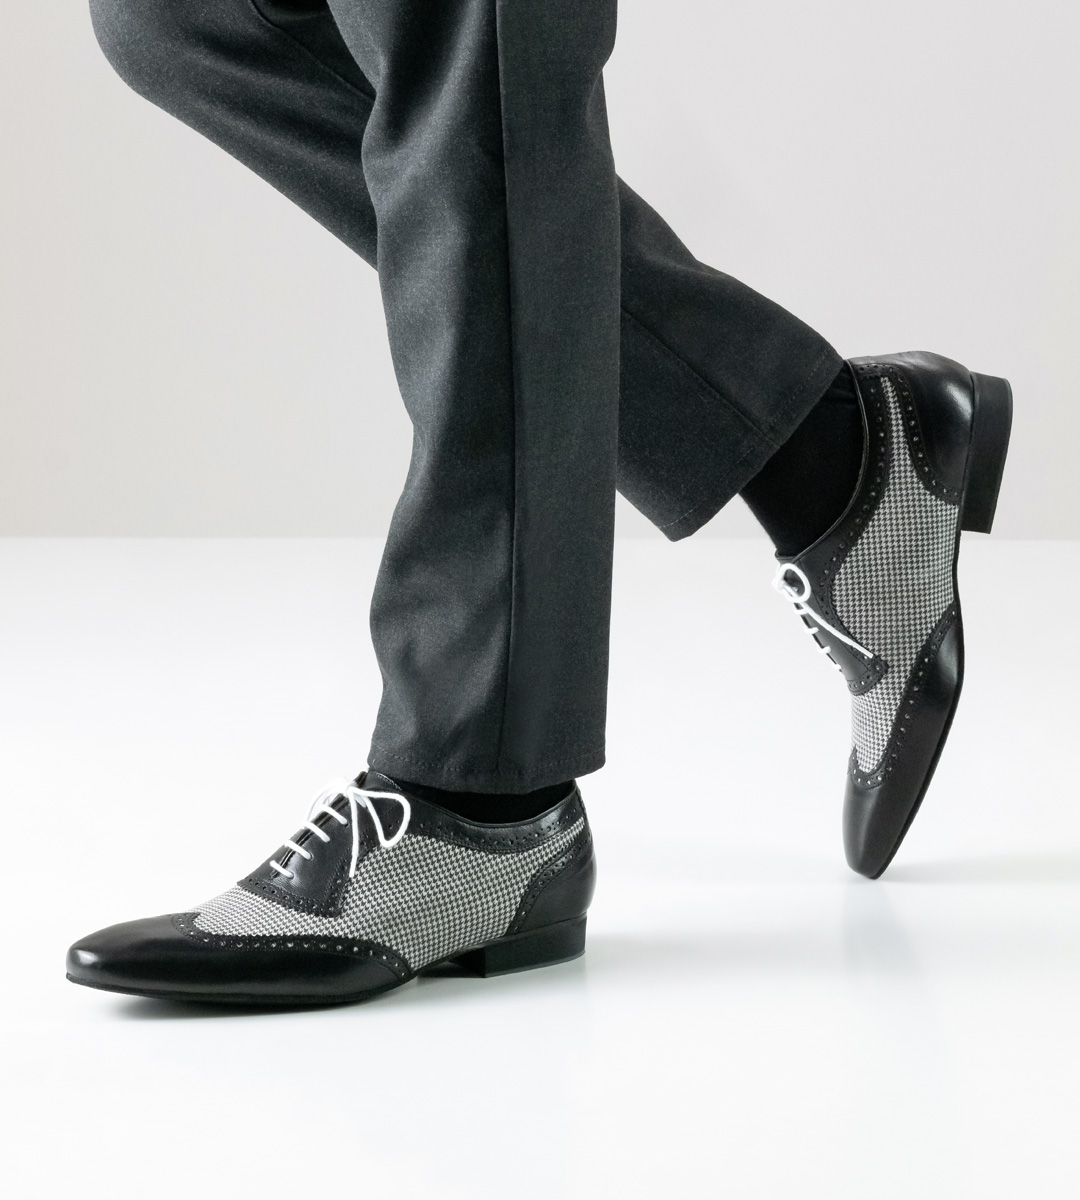 Nueva Epoca Men's Dance Shoe in Combination with Trousers in Grey